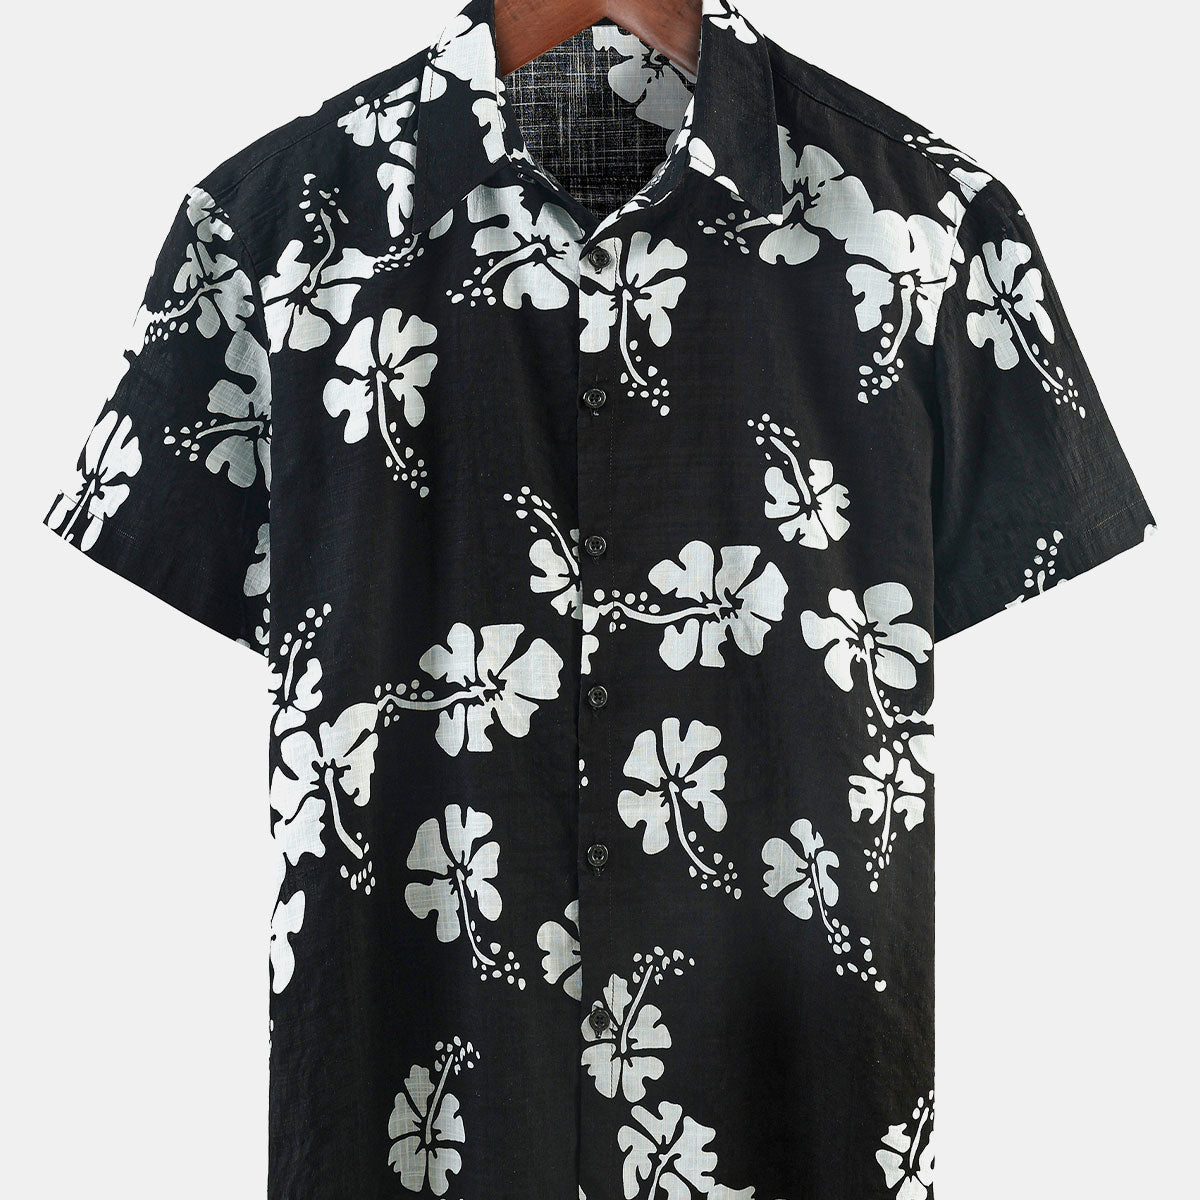 Men's Black Floral Short Sleeve Button Up Beach Tropical Hawaiian Shirt